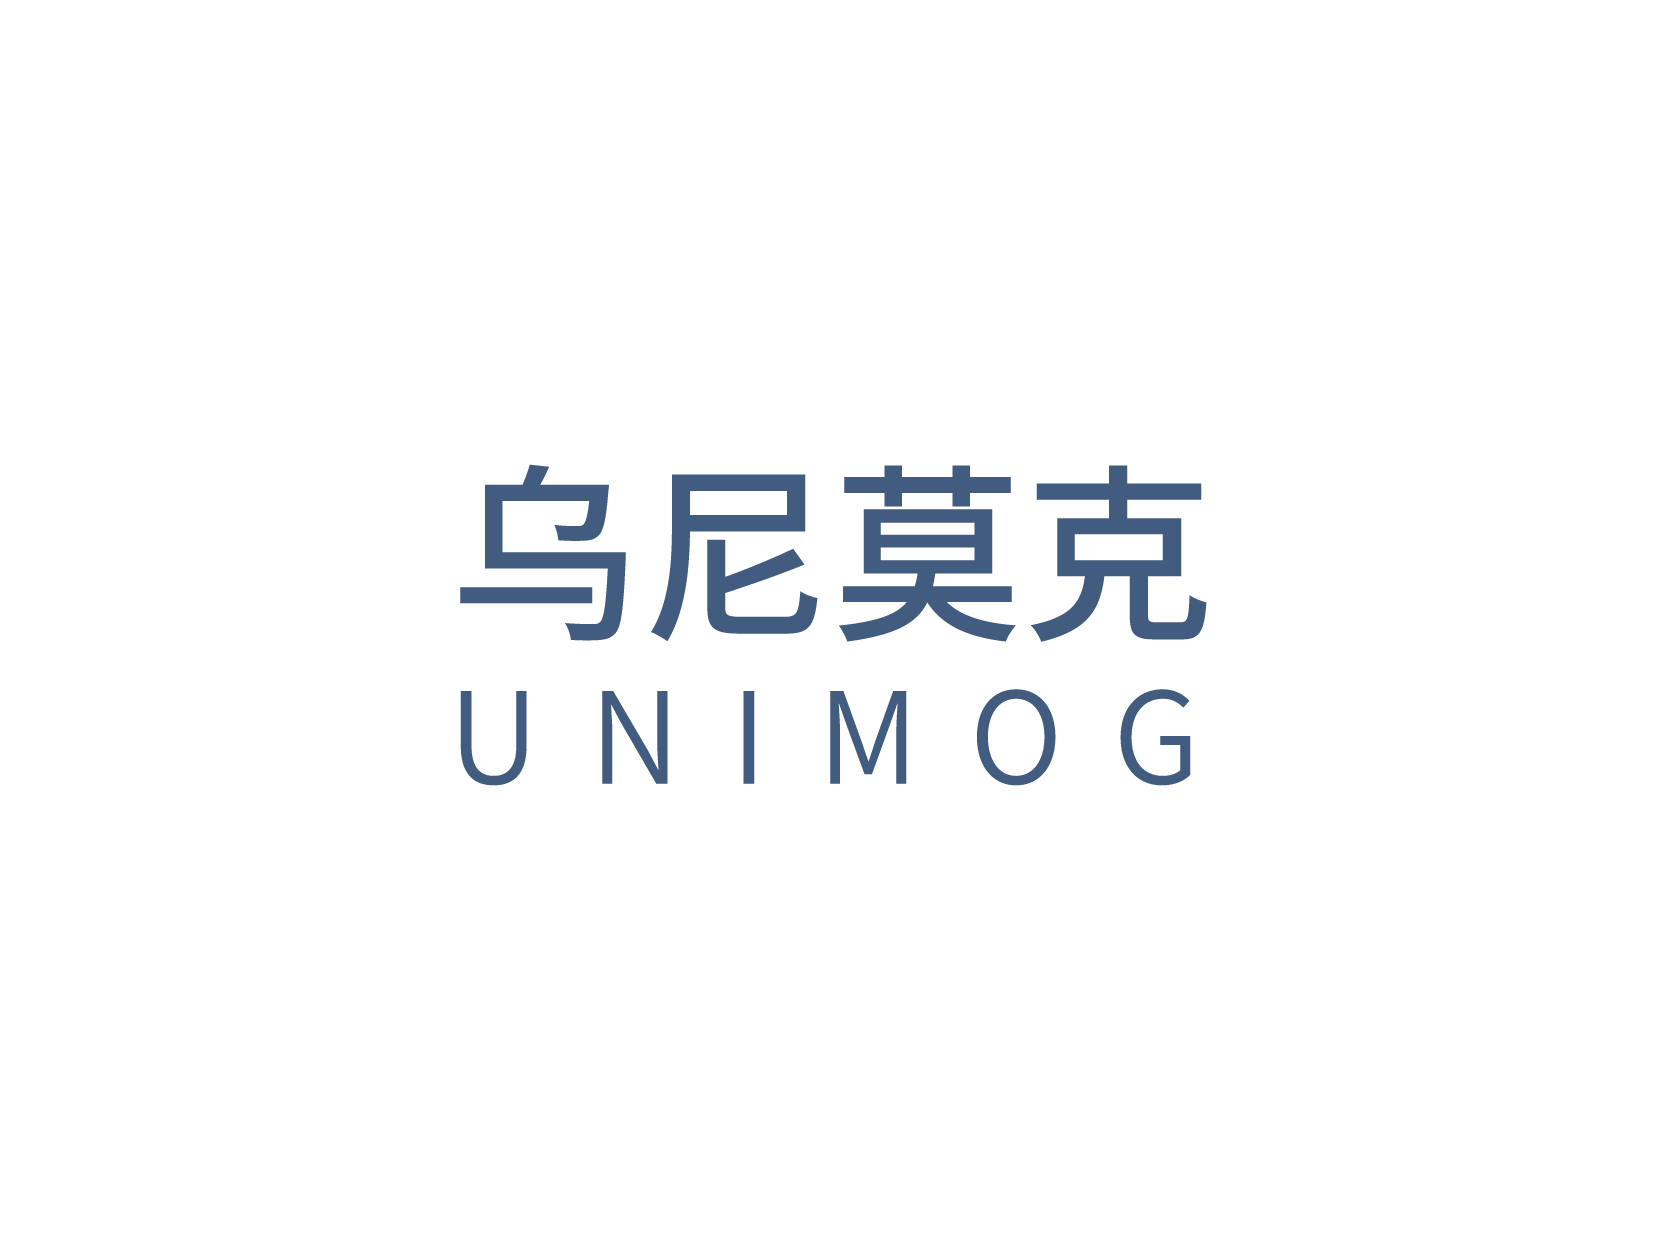 乌尼莫克Unimoglogo标志设计